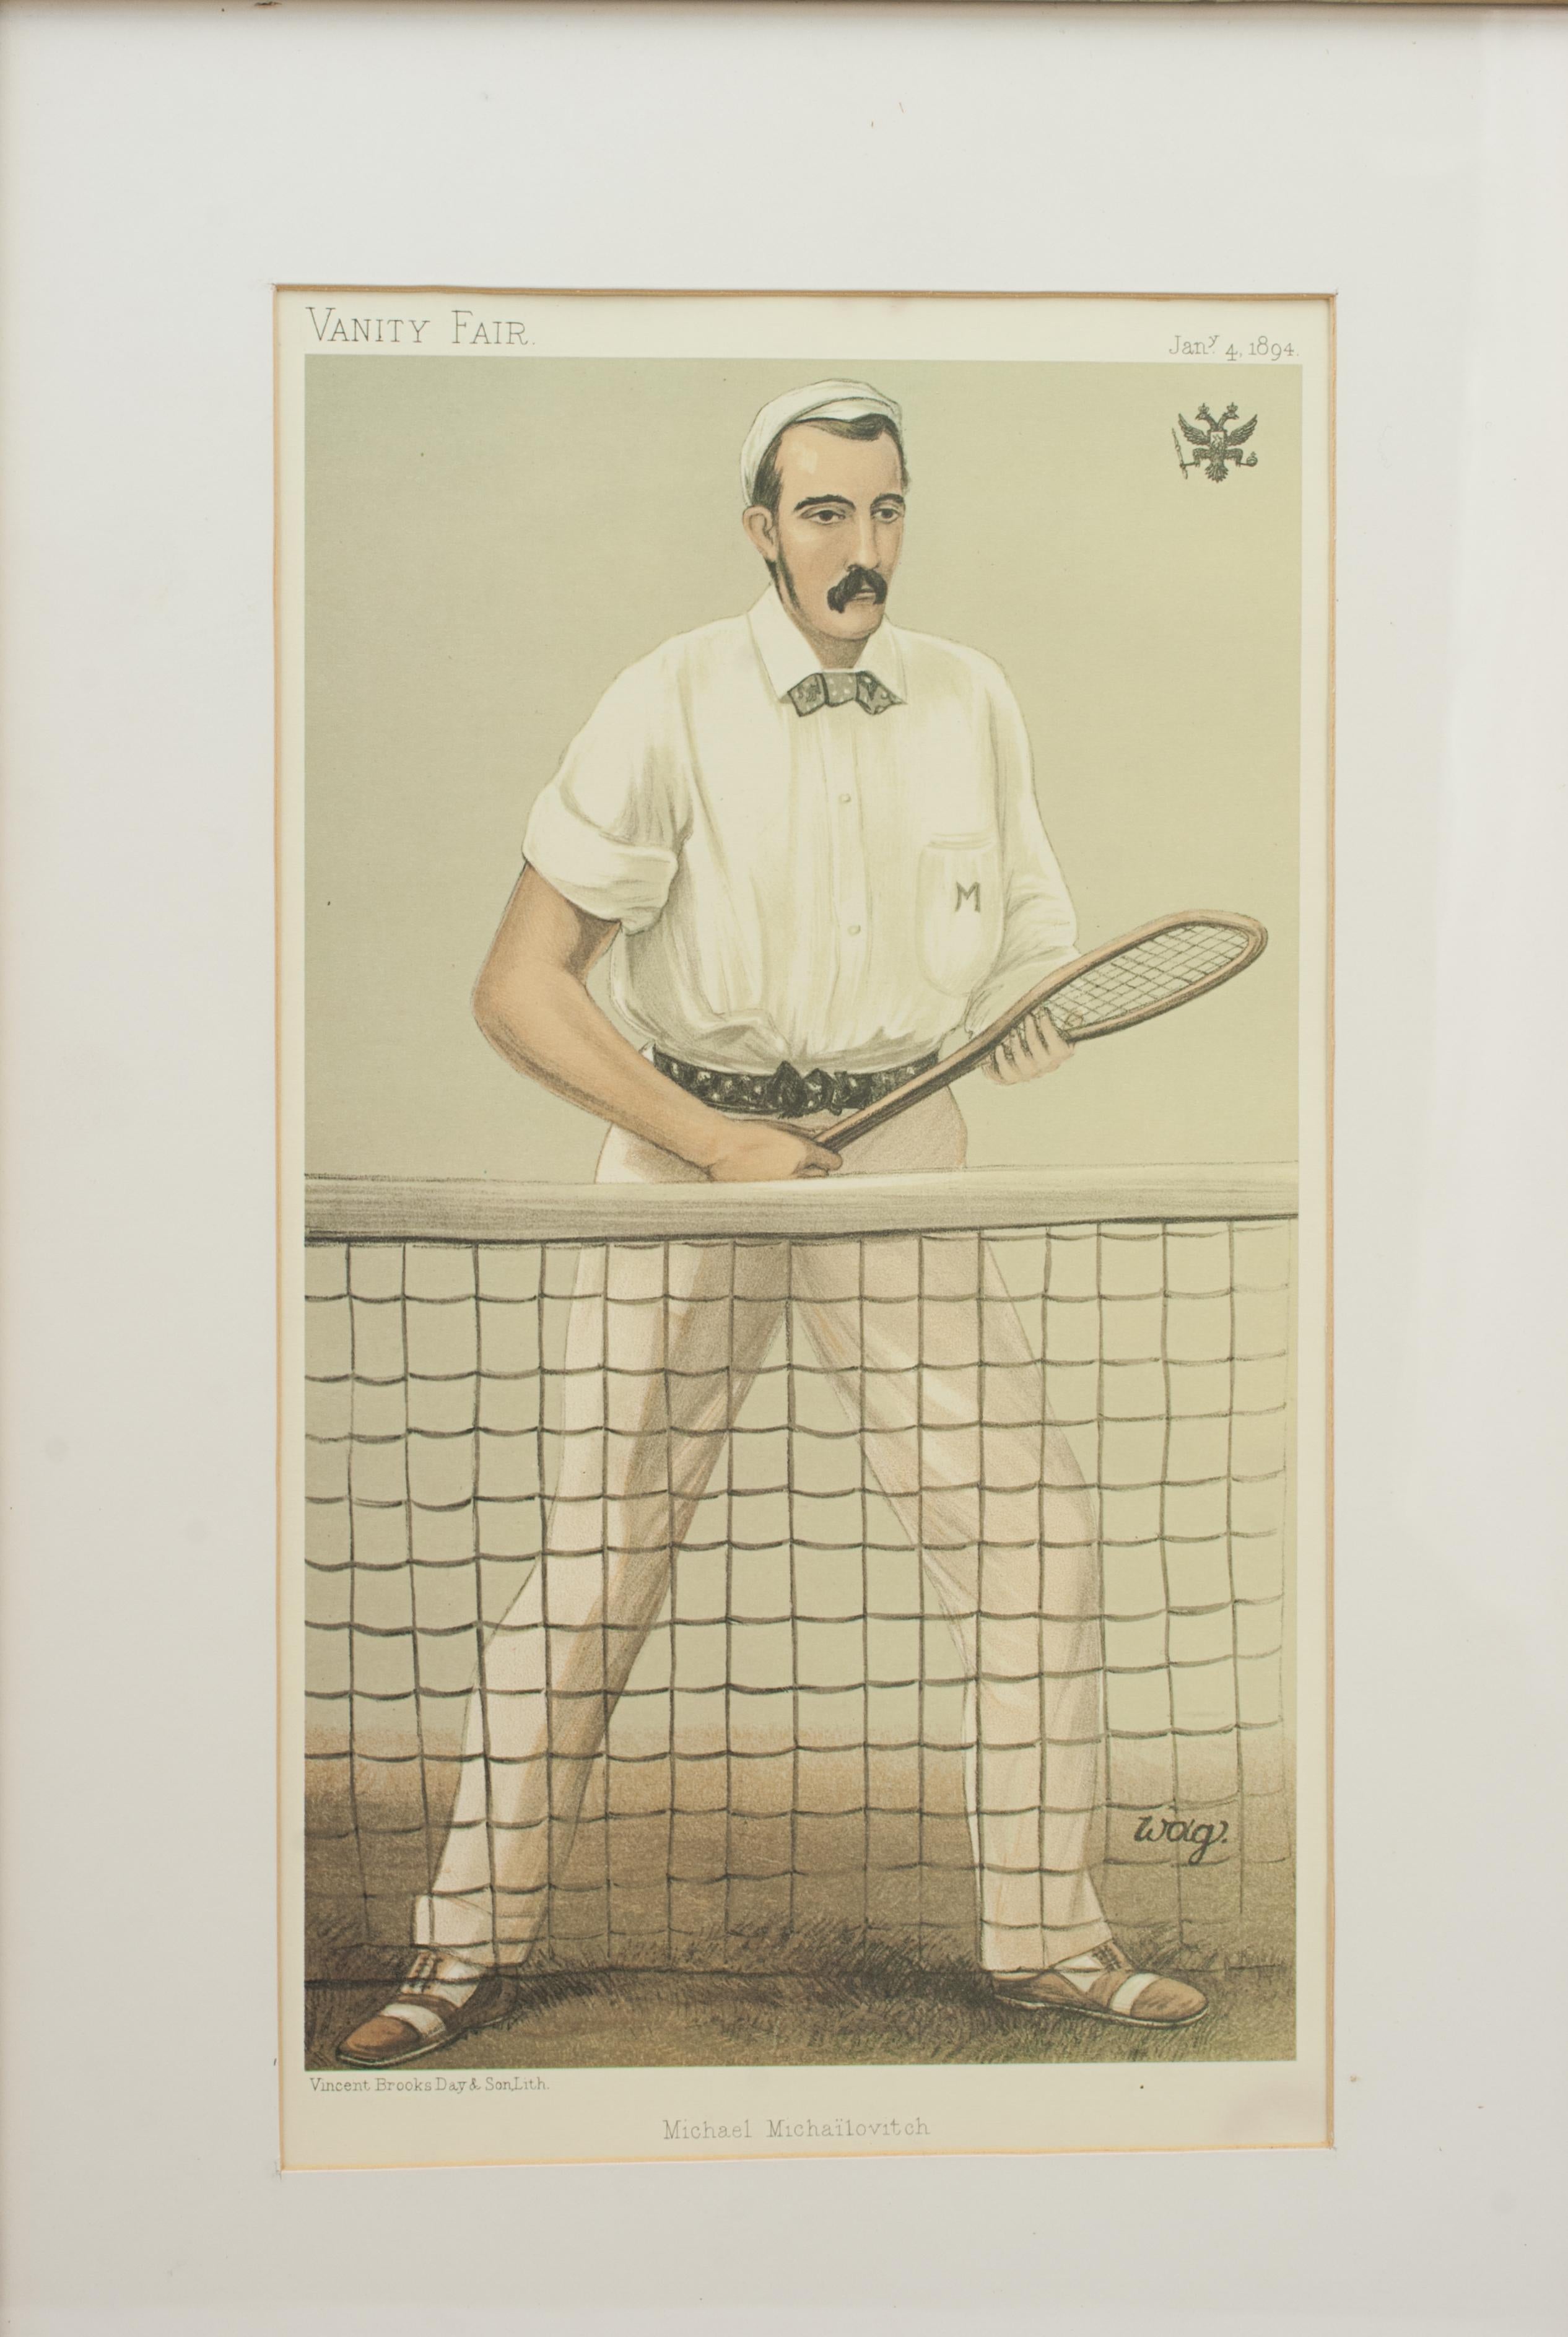 Anglais Tennis Vintage Vanity Fair Impression de Michailovitch de Russie en vente